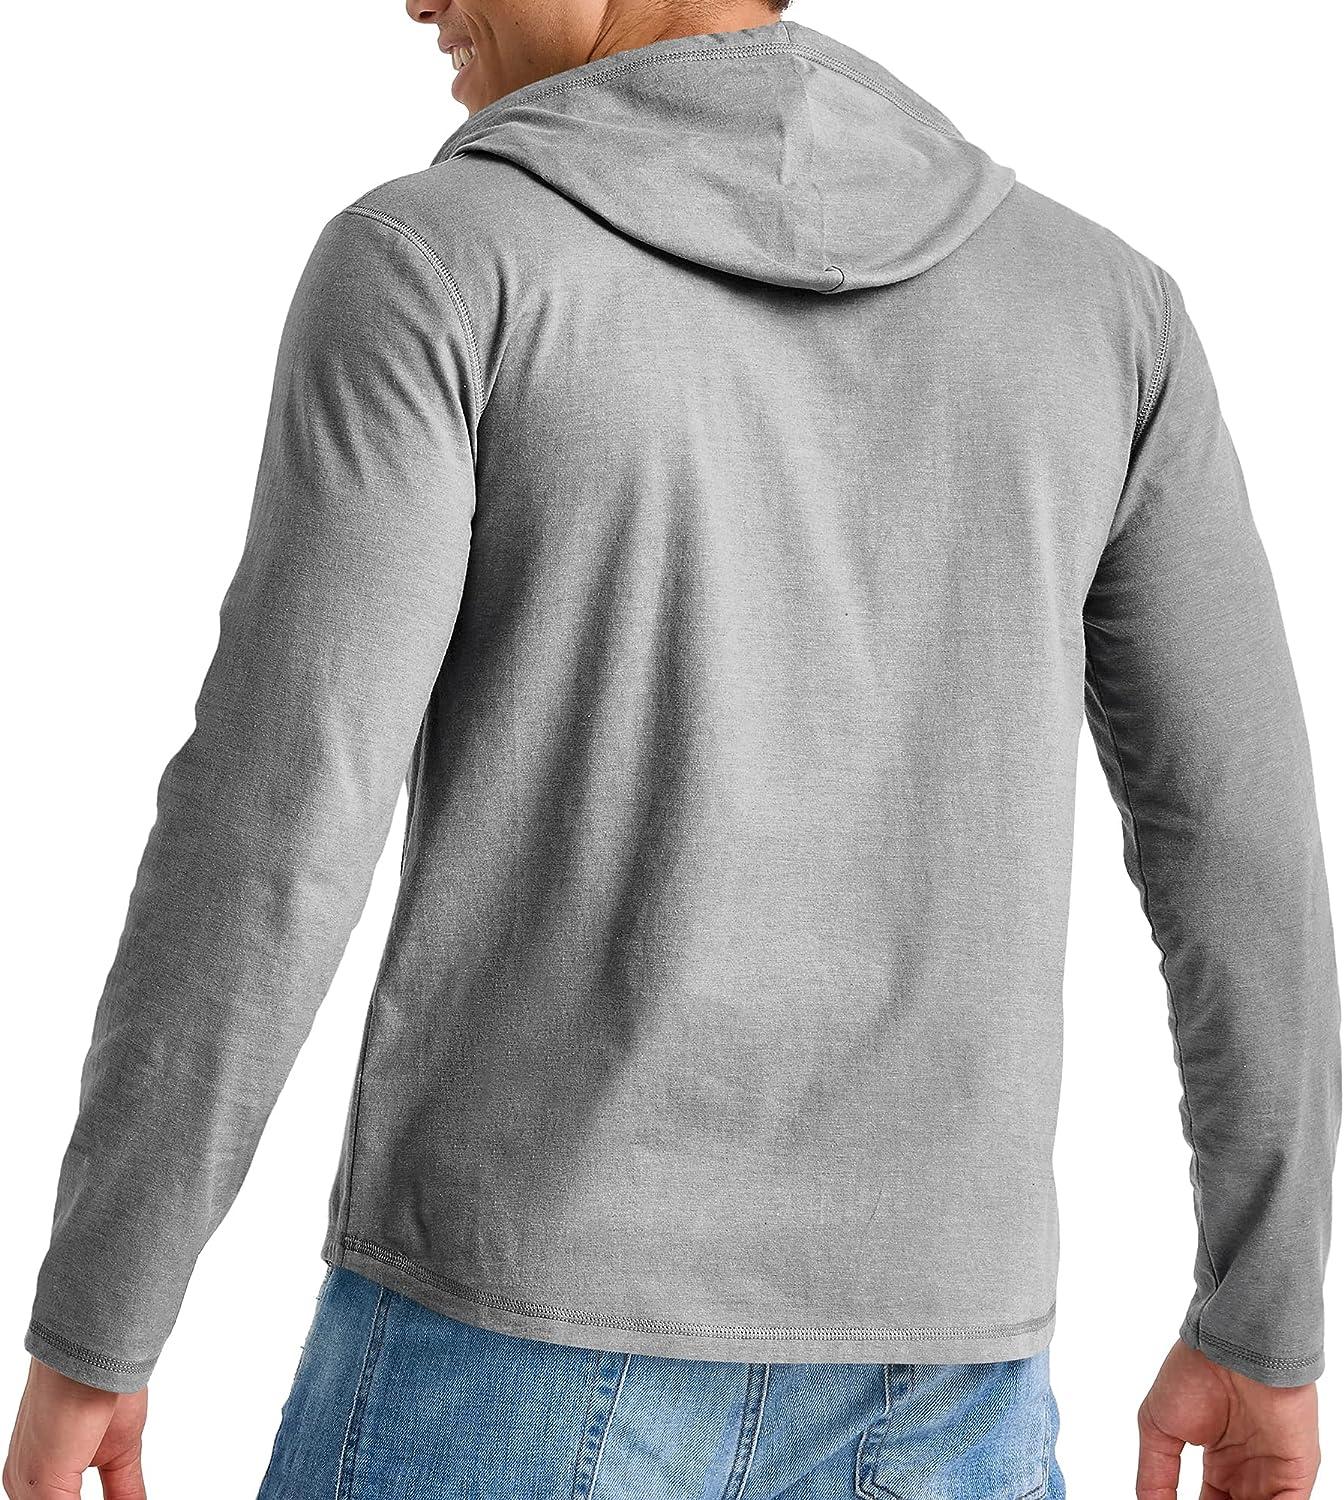 Hanes Originals Men's Fleece Sweatshirt